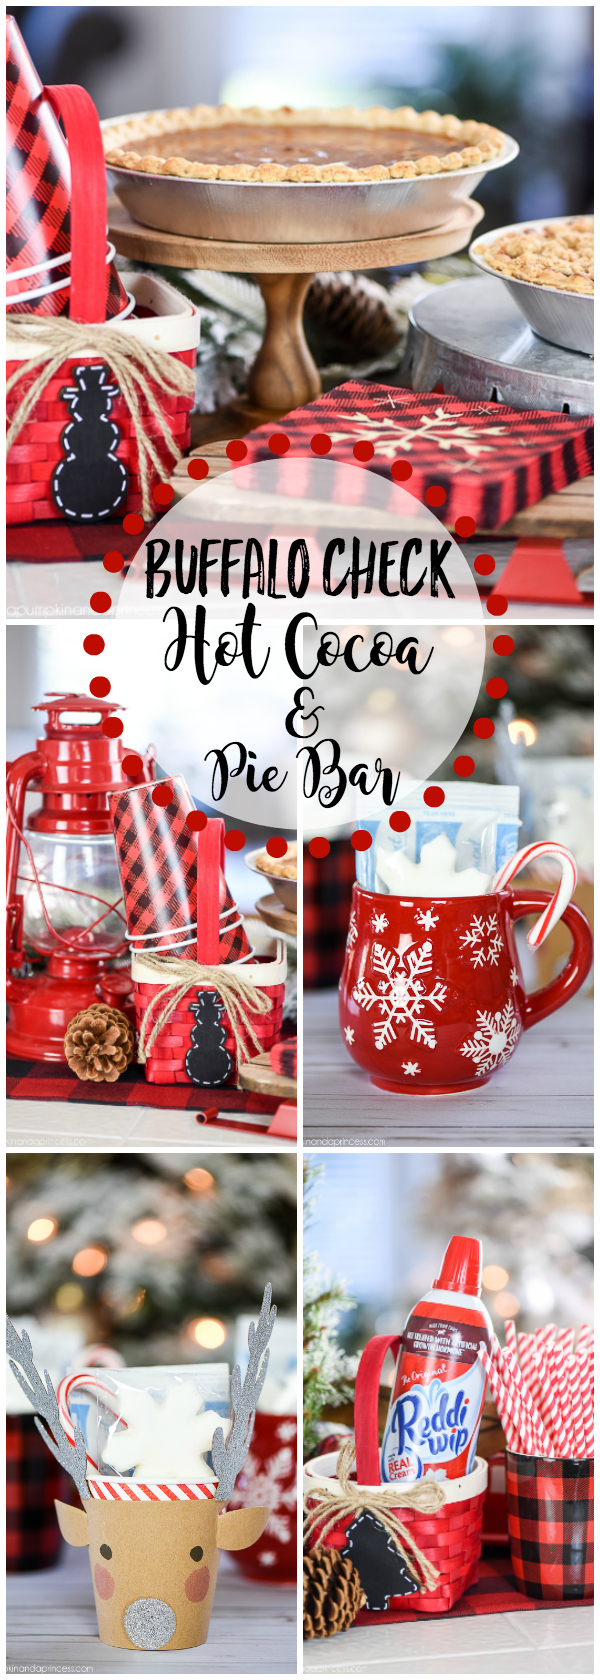 Buffalo-Check-Hot-Cocoa-Pie-Bar